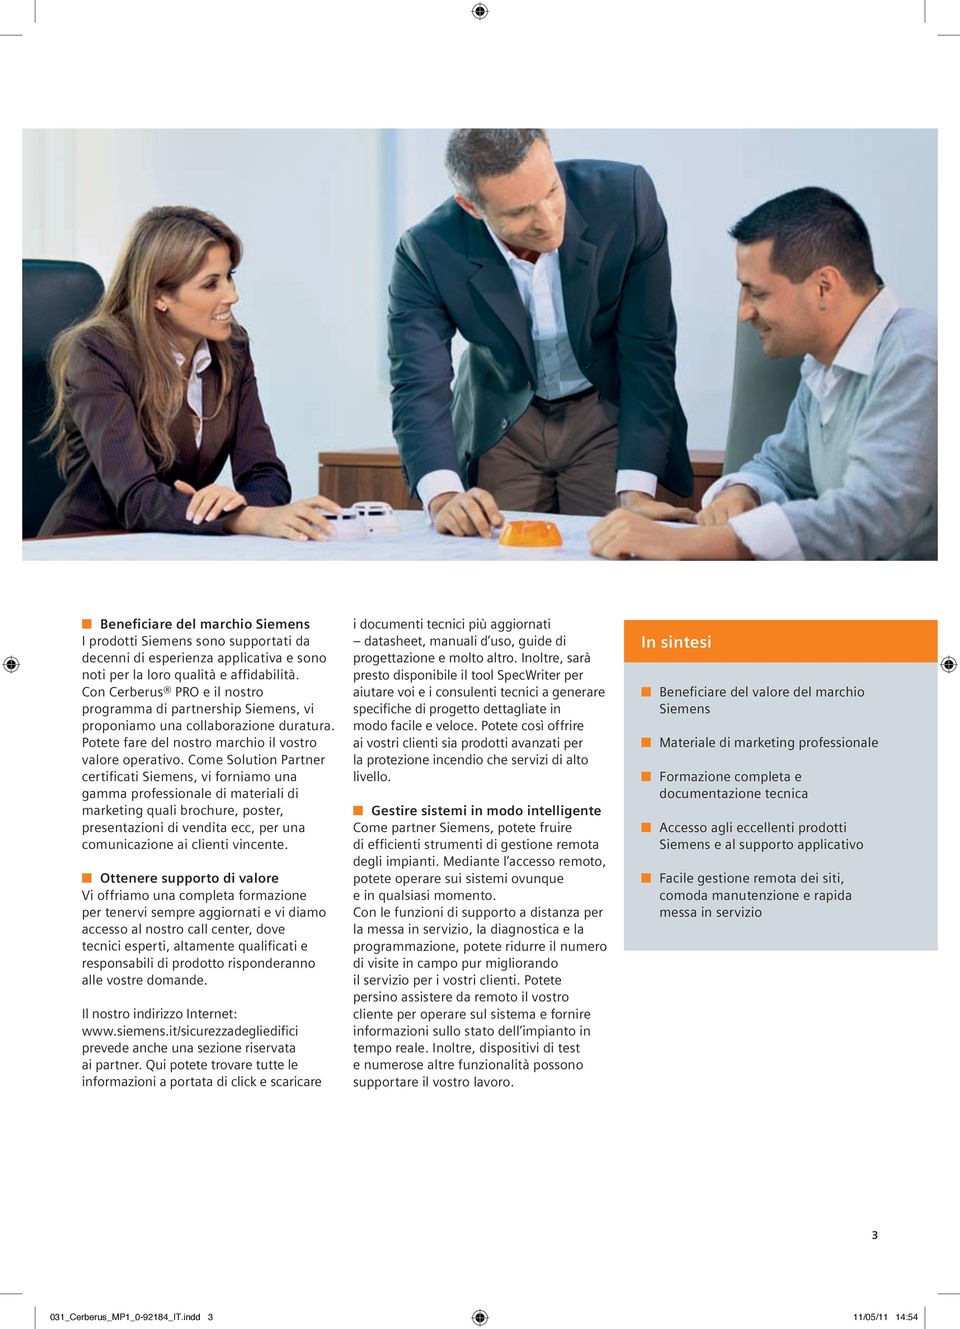 Come Solution Partner certificati Siemens, vi forniamo una gamma professionale di materiali di marketing quali brochure, poster, presentazioni di vendita ecc, per una comunicazione ai clienti